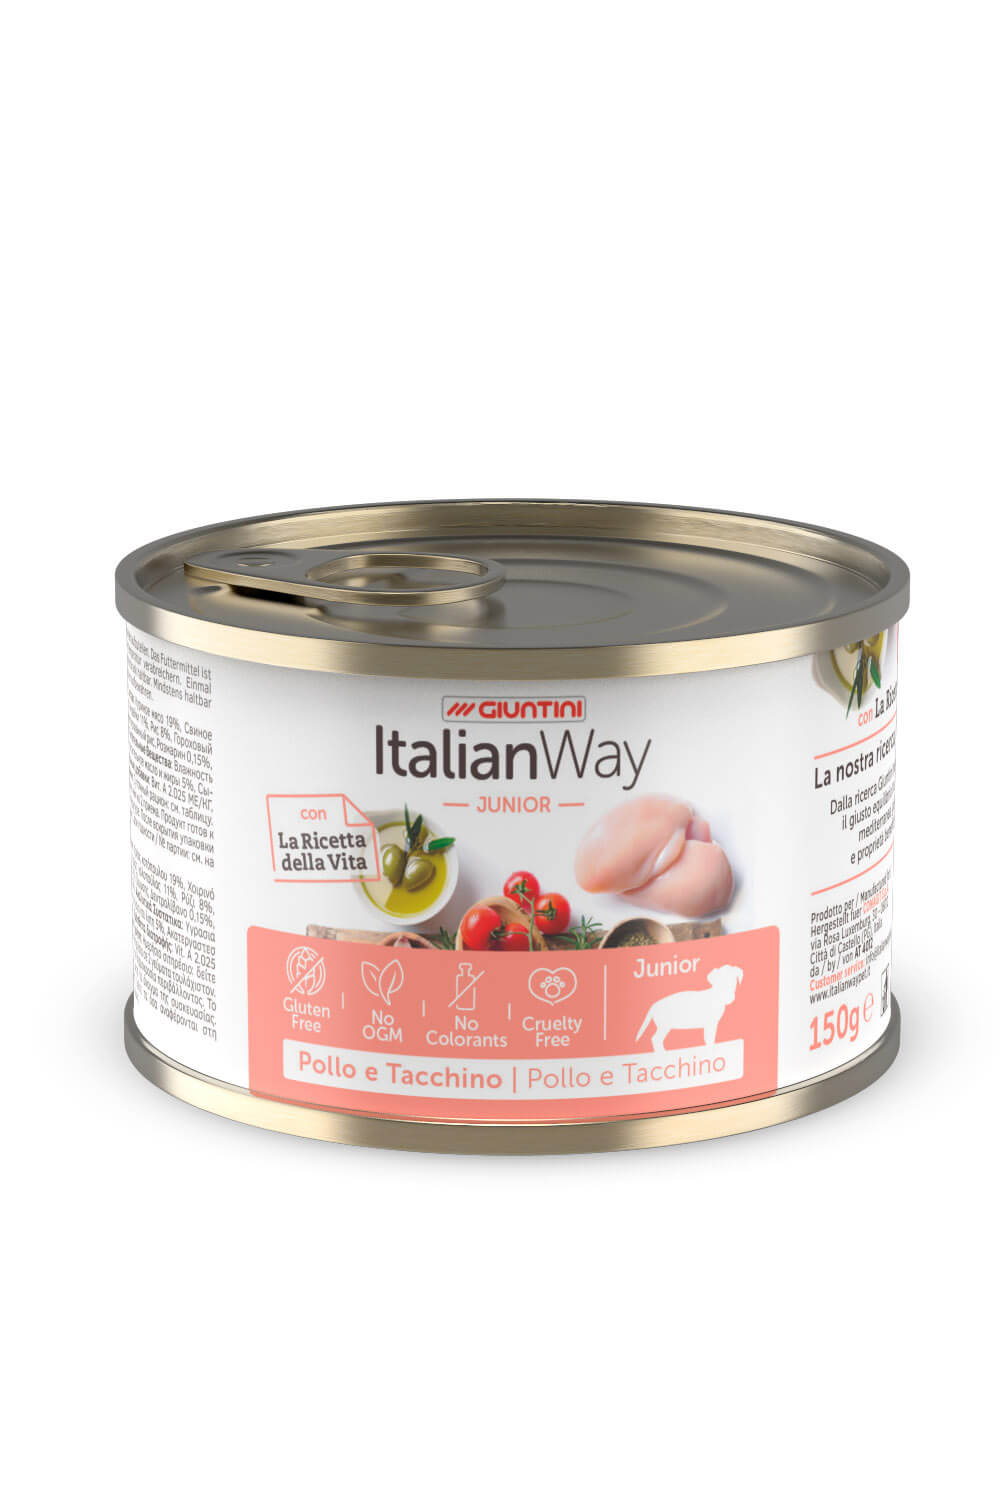 ItalianWay - Lattina di Umido Completo Senza Glutine per Cani Cuccioli Classic Puppy 150g